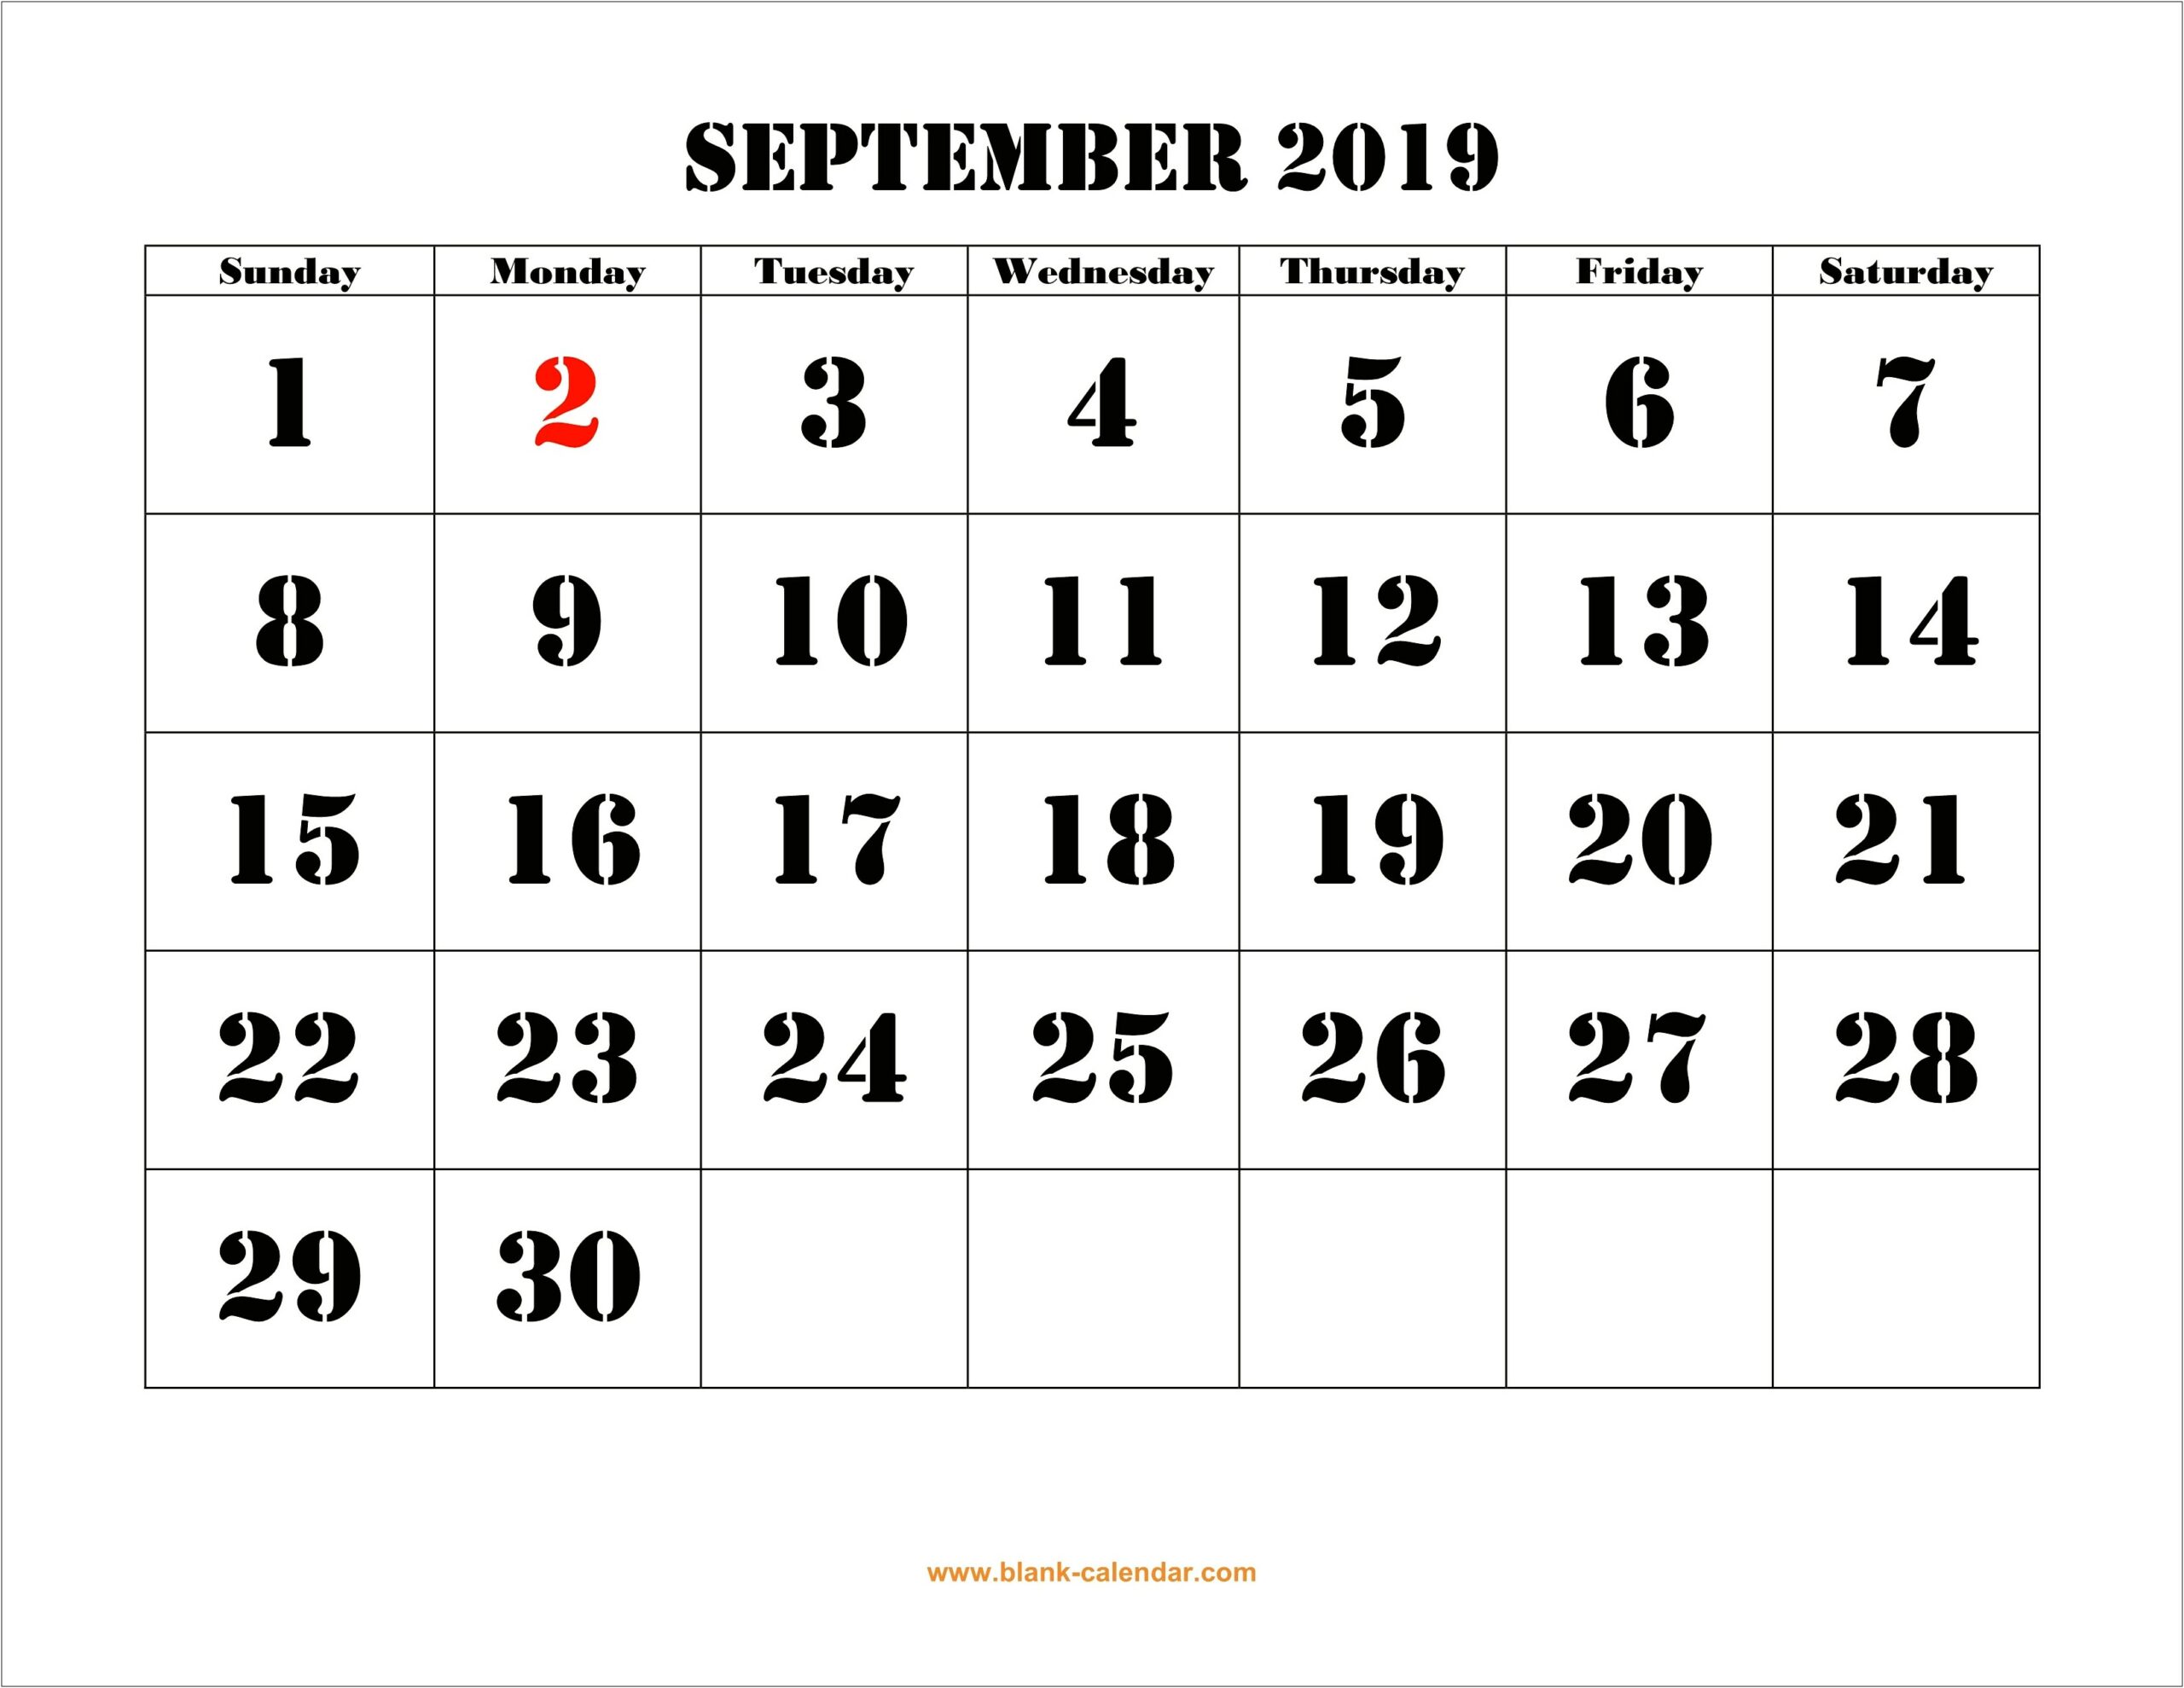 September 2019 Calendar Word Template Download